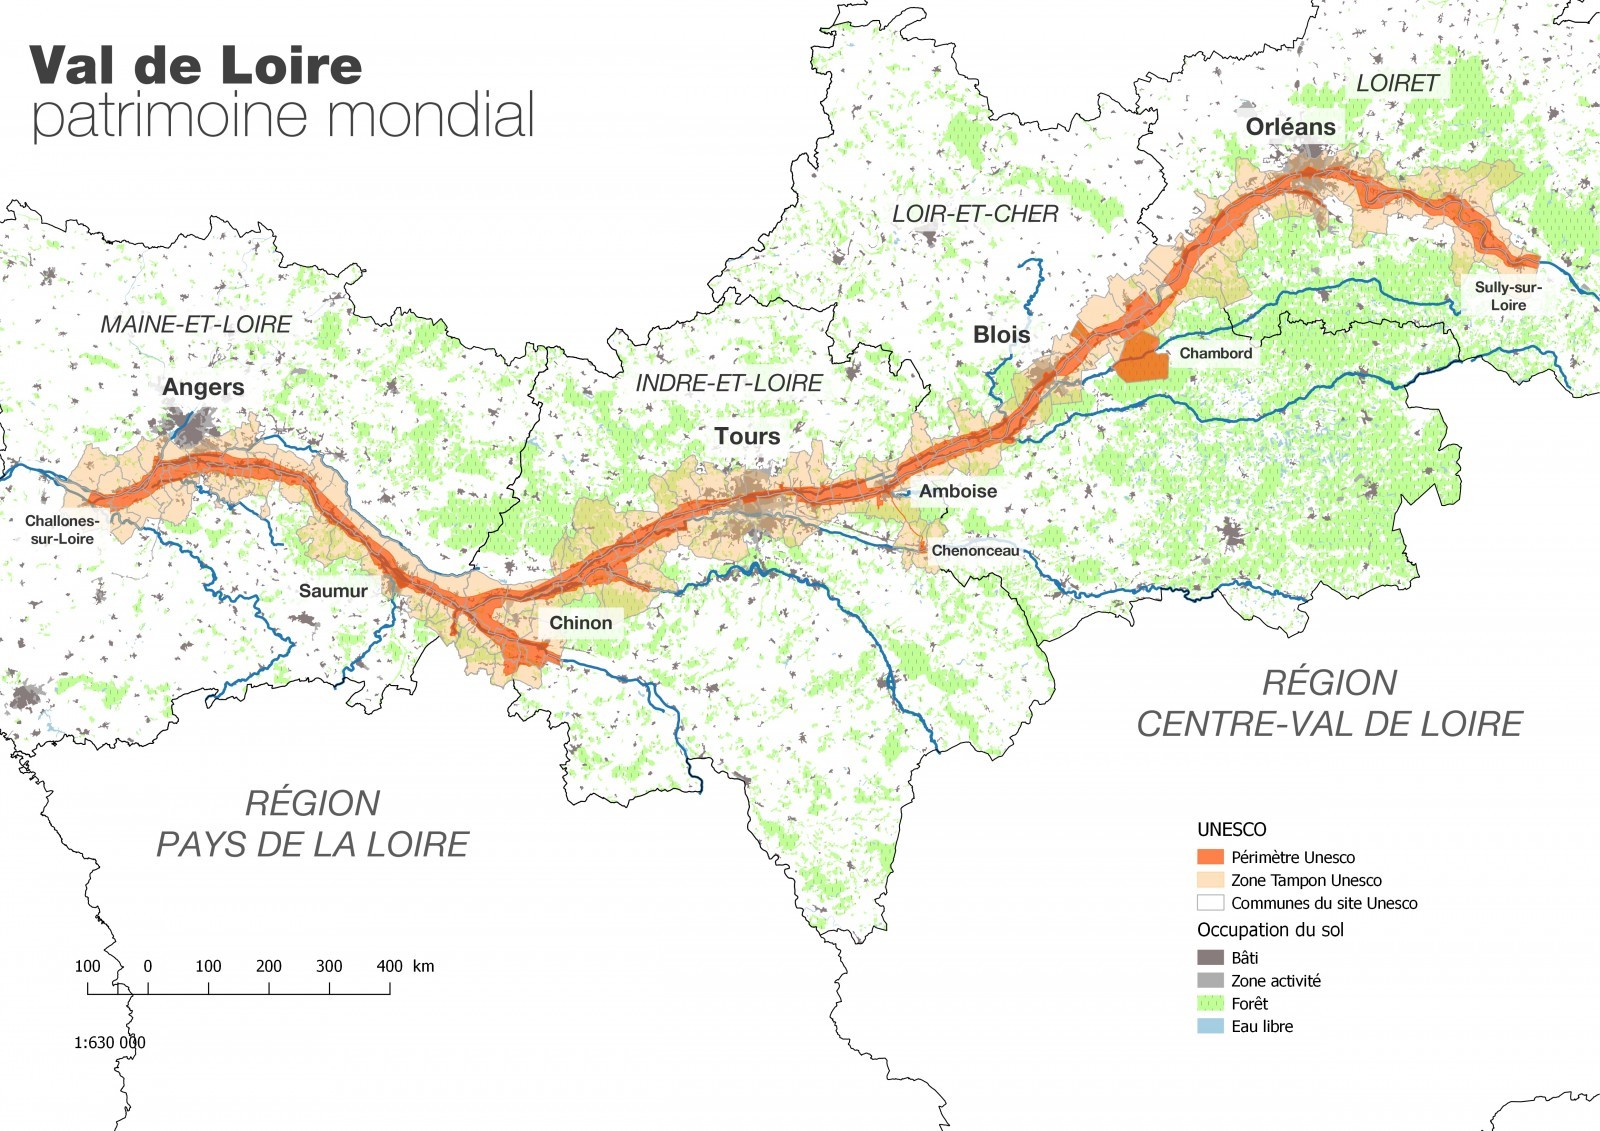 Carte du fleuve Loire et du périmètre inscrit sur la liste du patrimoine mondial. Le périmètre inscrit s’étend sur un territoire qui comprend 157 communes réparties sur 4 départements et 2 régions, depuis Sully-sur-Loire en amont jusqu’à Chalonnes-sur-Loire en aval. 2 métropoles (Orléans et Tours), 1 communauté urbaine (Angers Loire Métropole), 2 communautés d’agglomération (Blois-Agglopolys et Saumur Val de Loire) et 13 communautés de communes accueillent plus d’1,2 millions d’habitants.  Source : Mission Val de Loire Patrimoine mondial